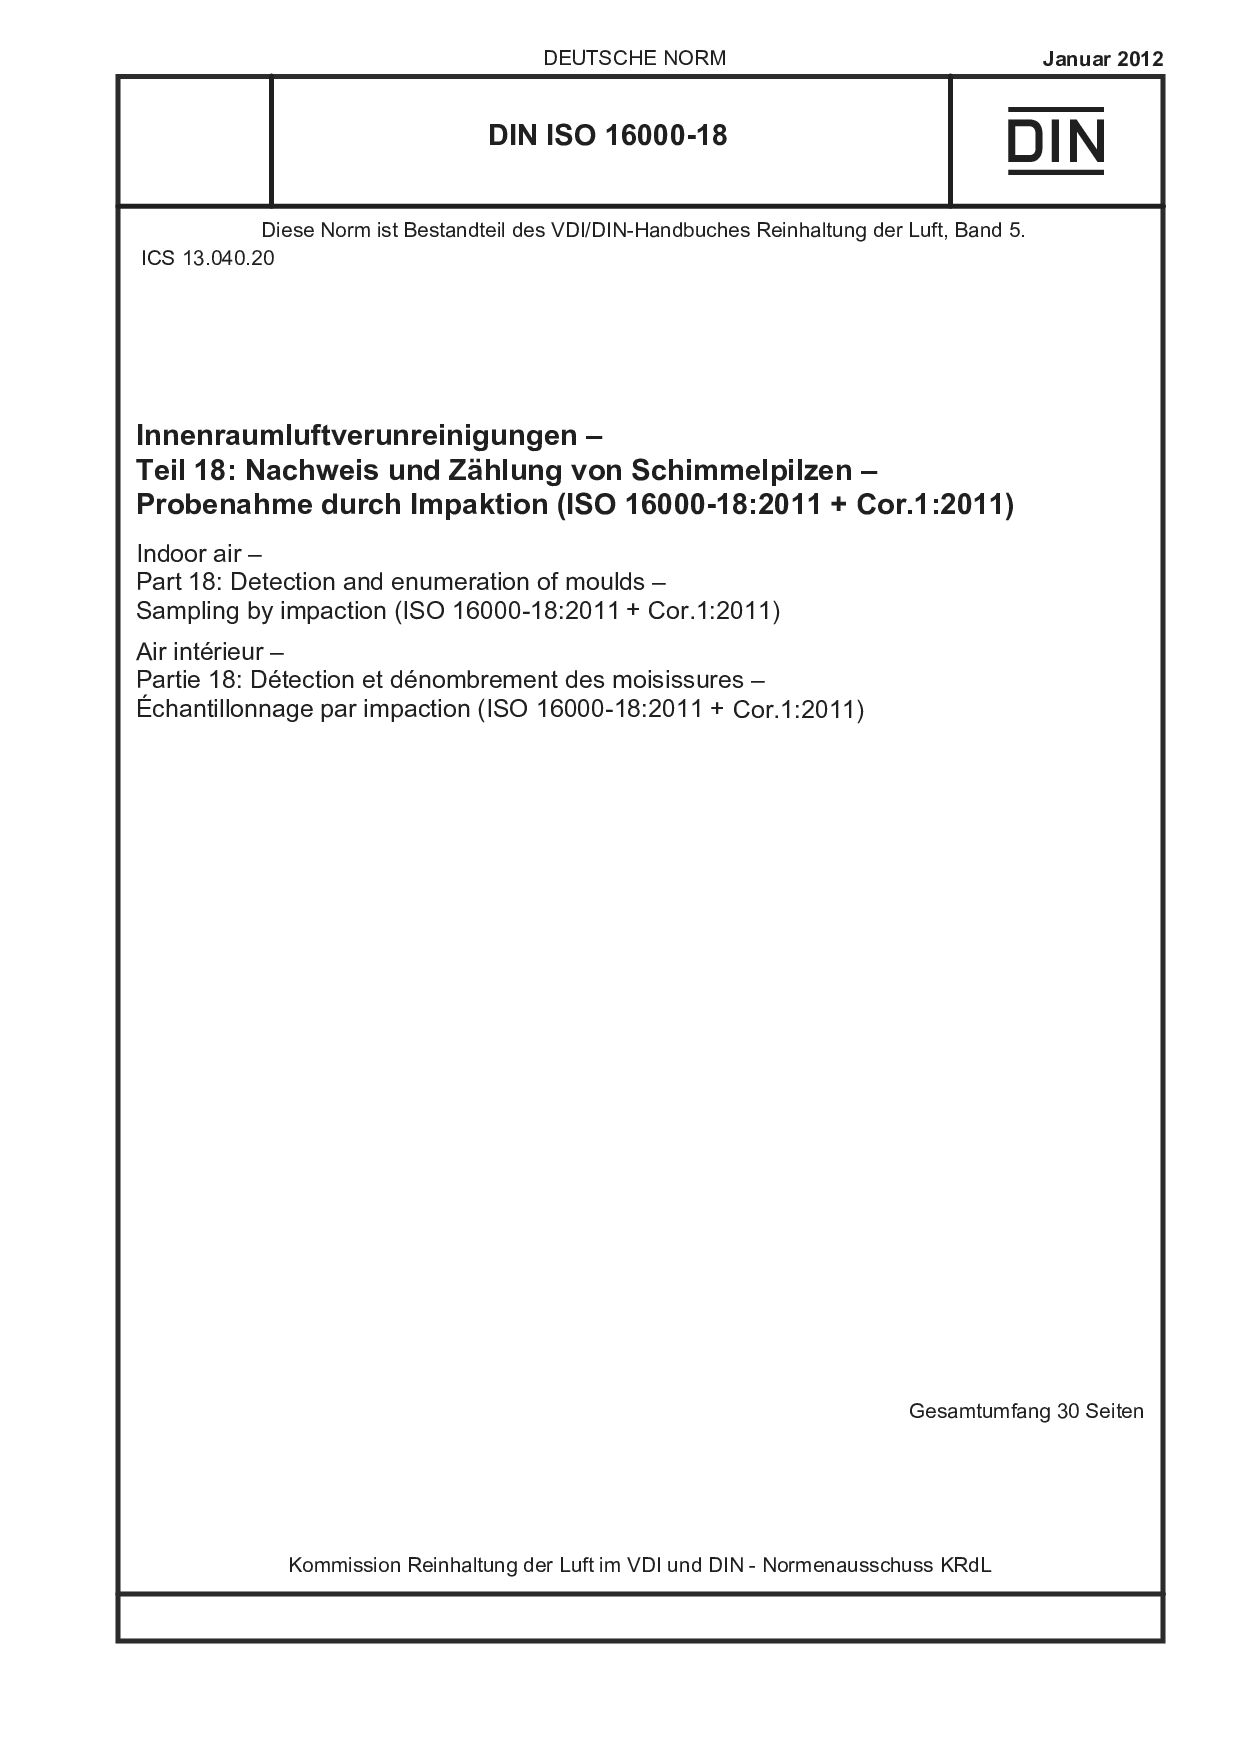 DIN ISO 16000-18:2012封面图